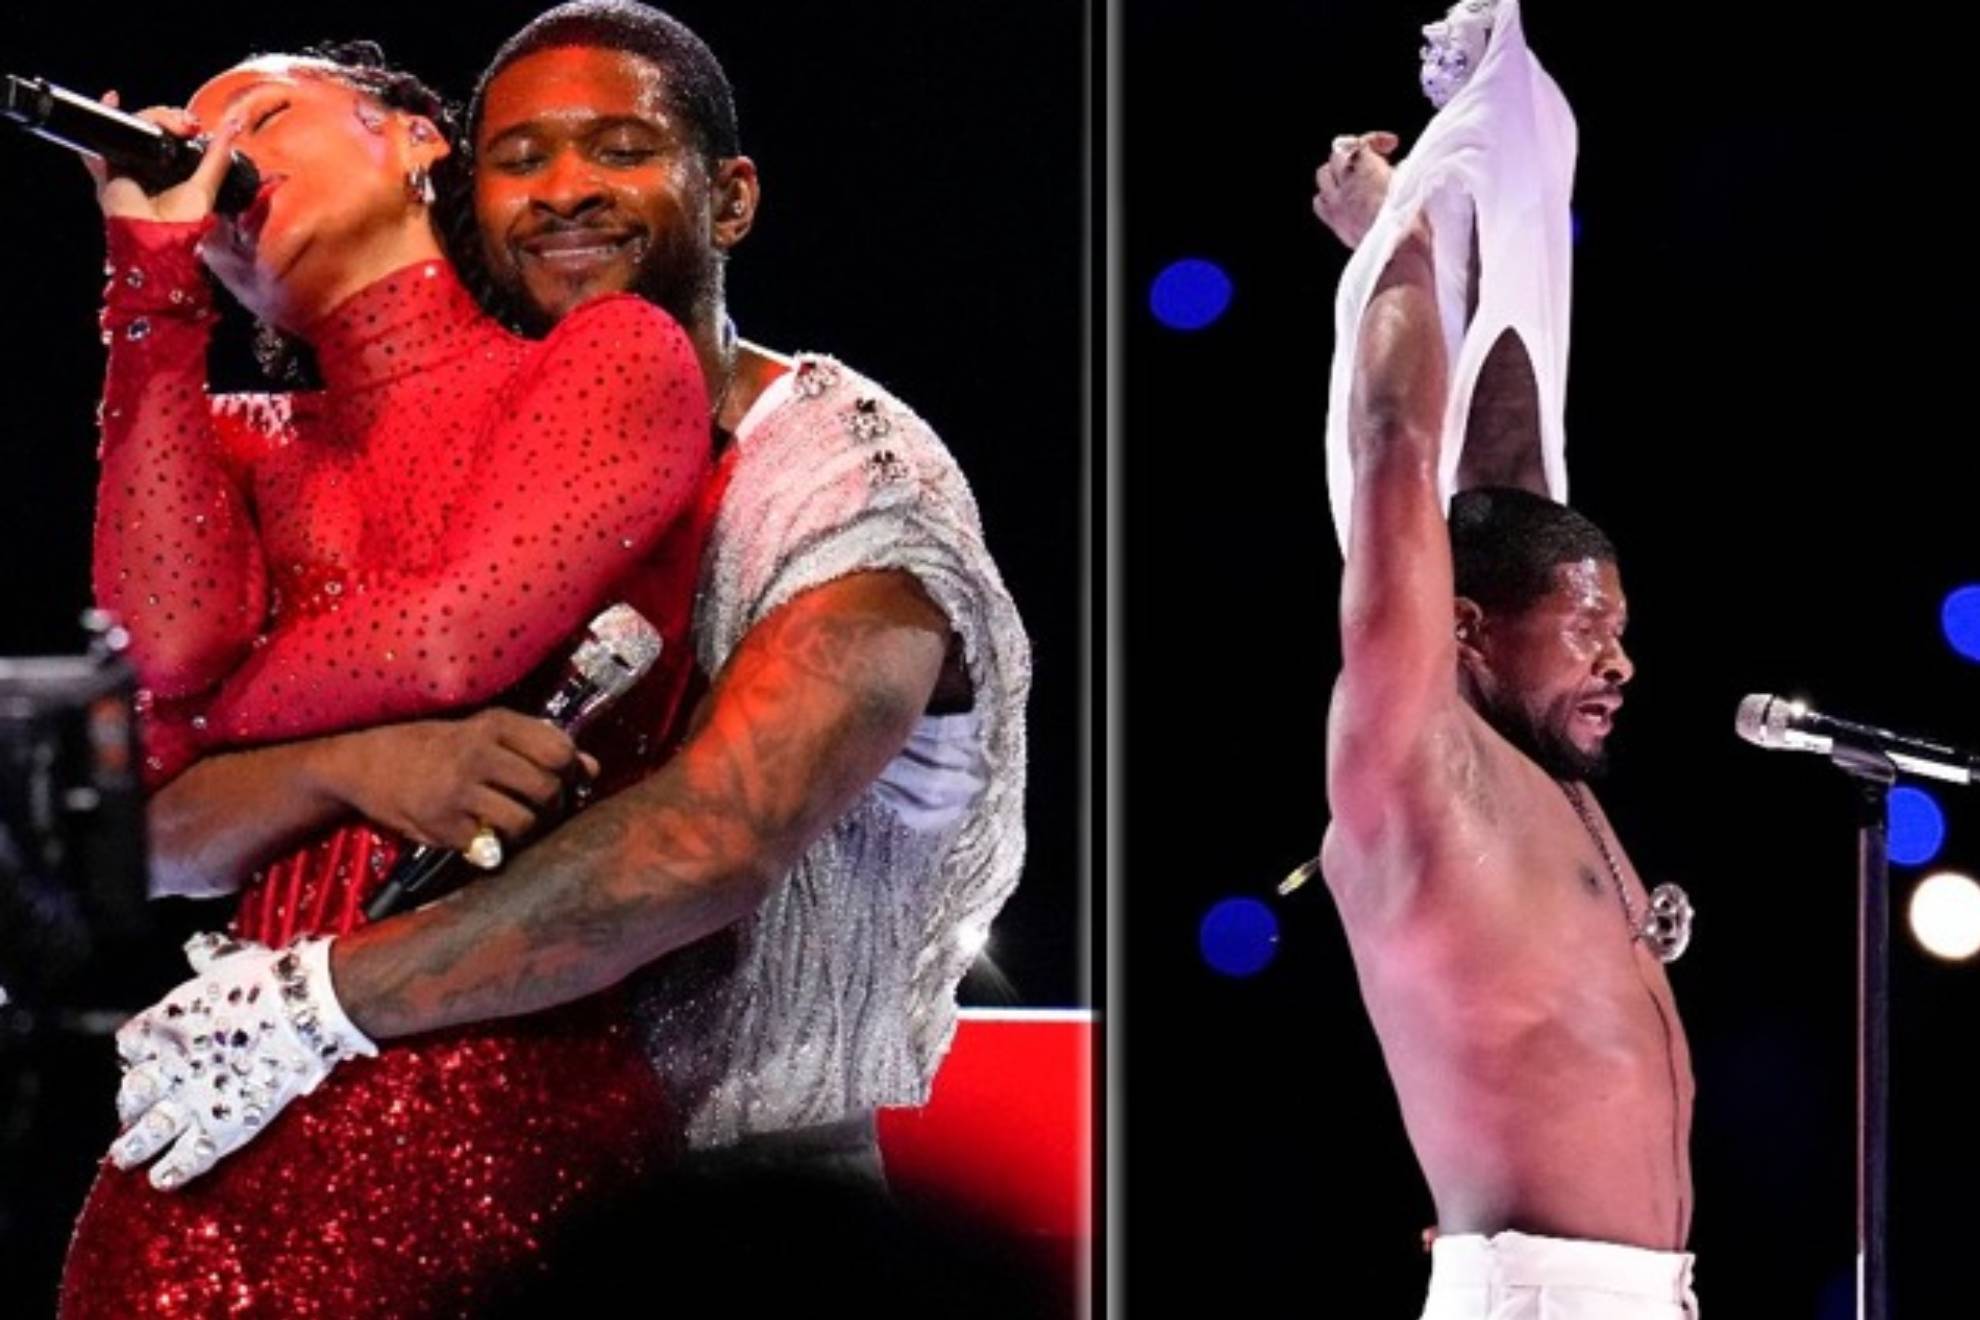 Los detalles del aburrido show de Usher en la Super Bowl al que no salvó ni un striptease: Una bazofia